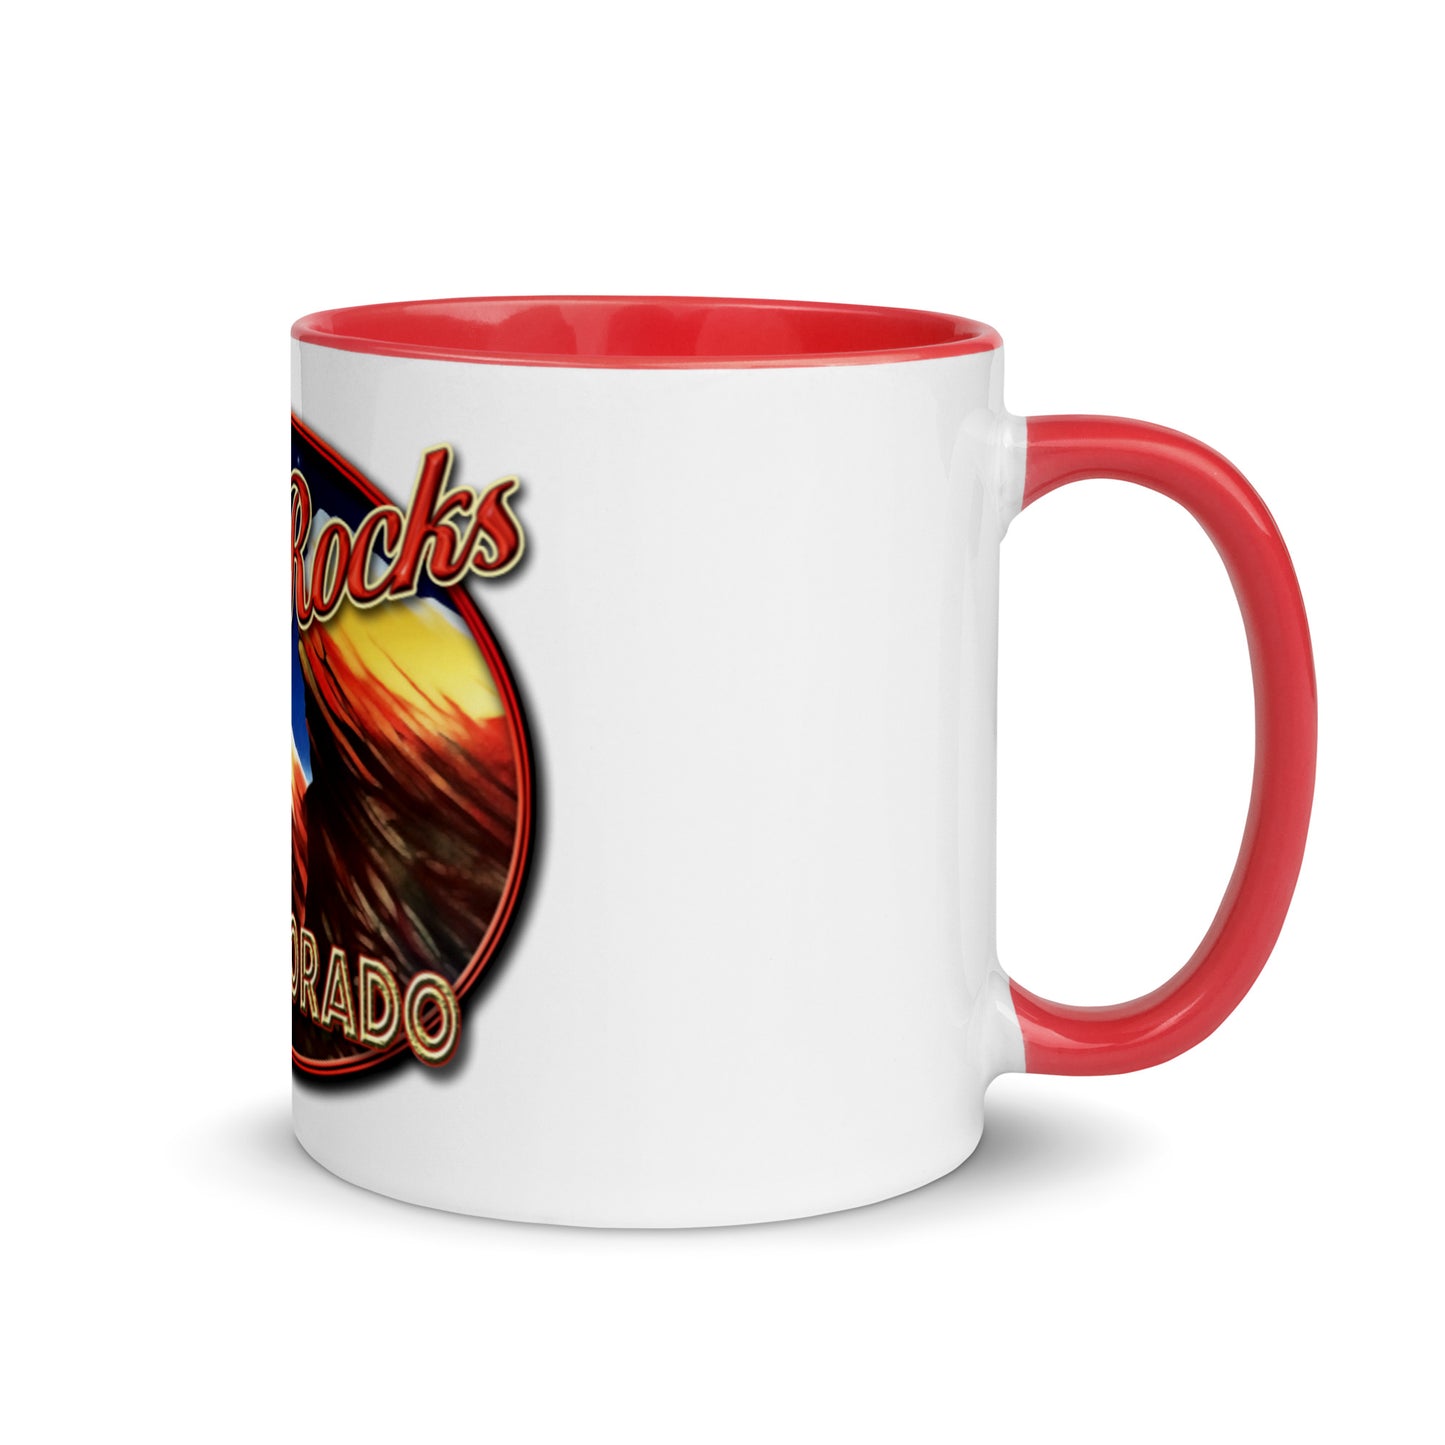 Red Rocks Colorado Mug with Color Inside